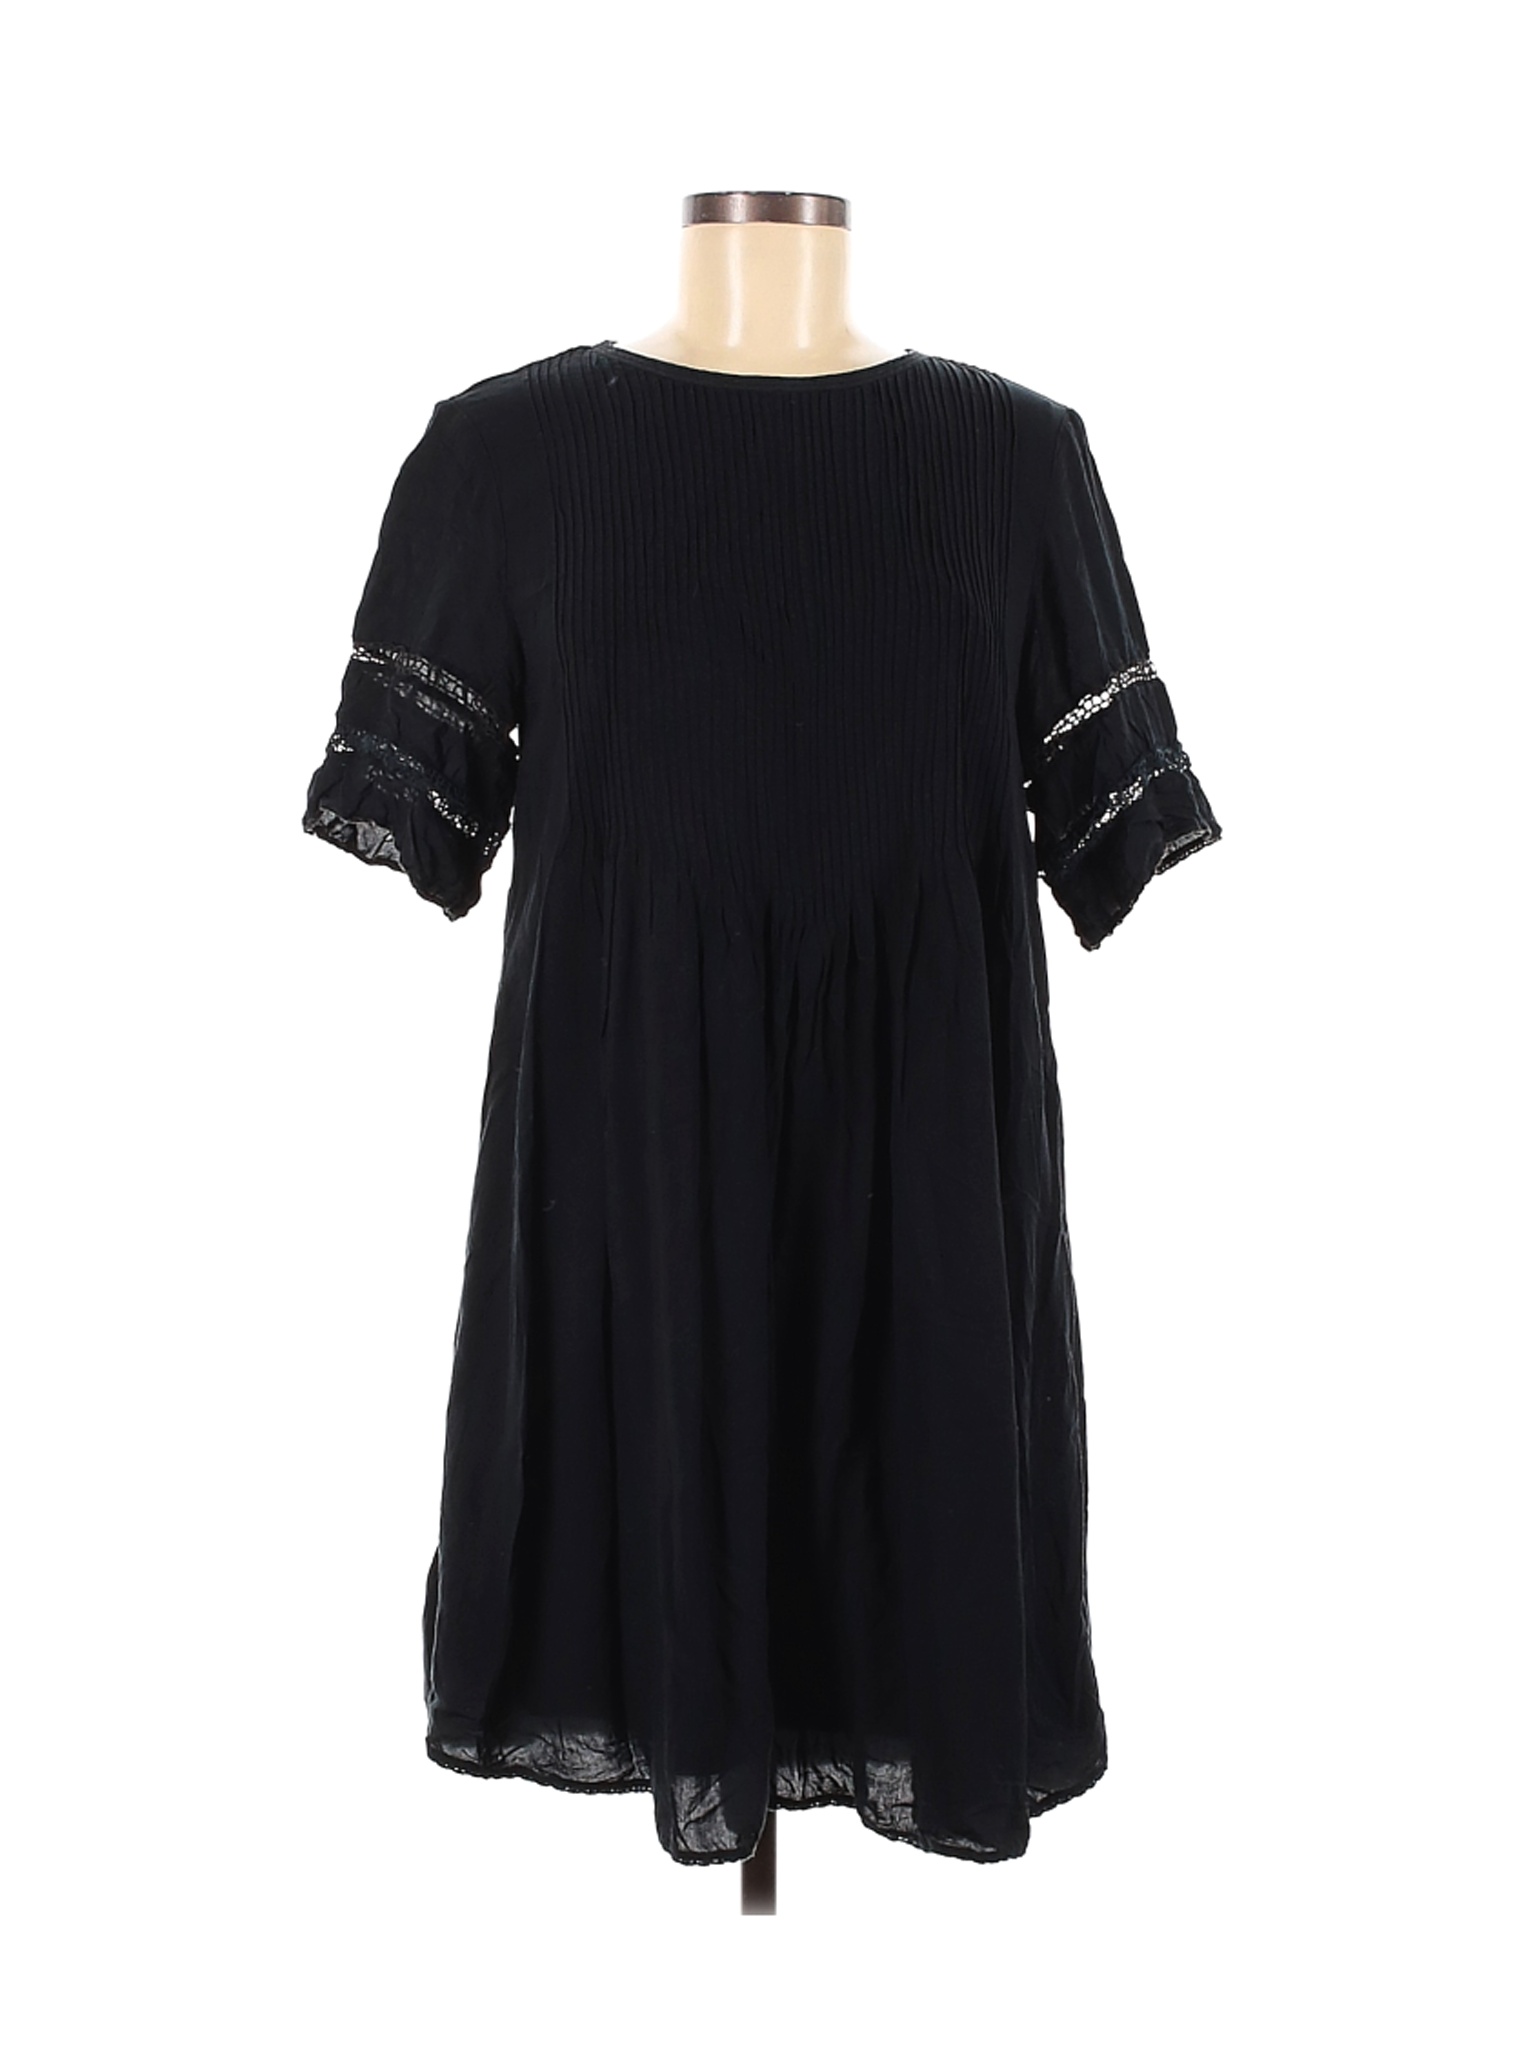 Wilfred Women Black Casual Dress M | eBay